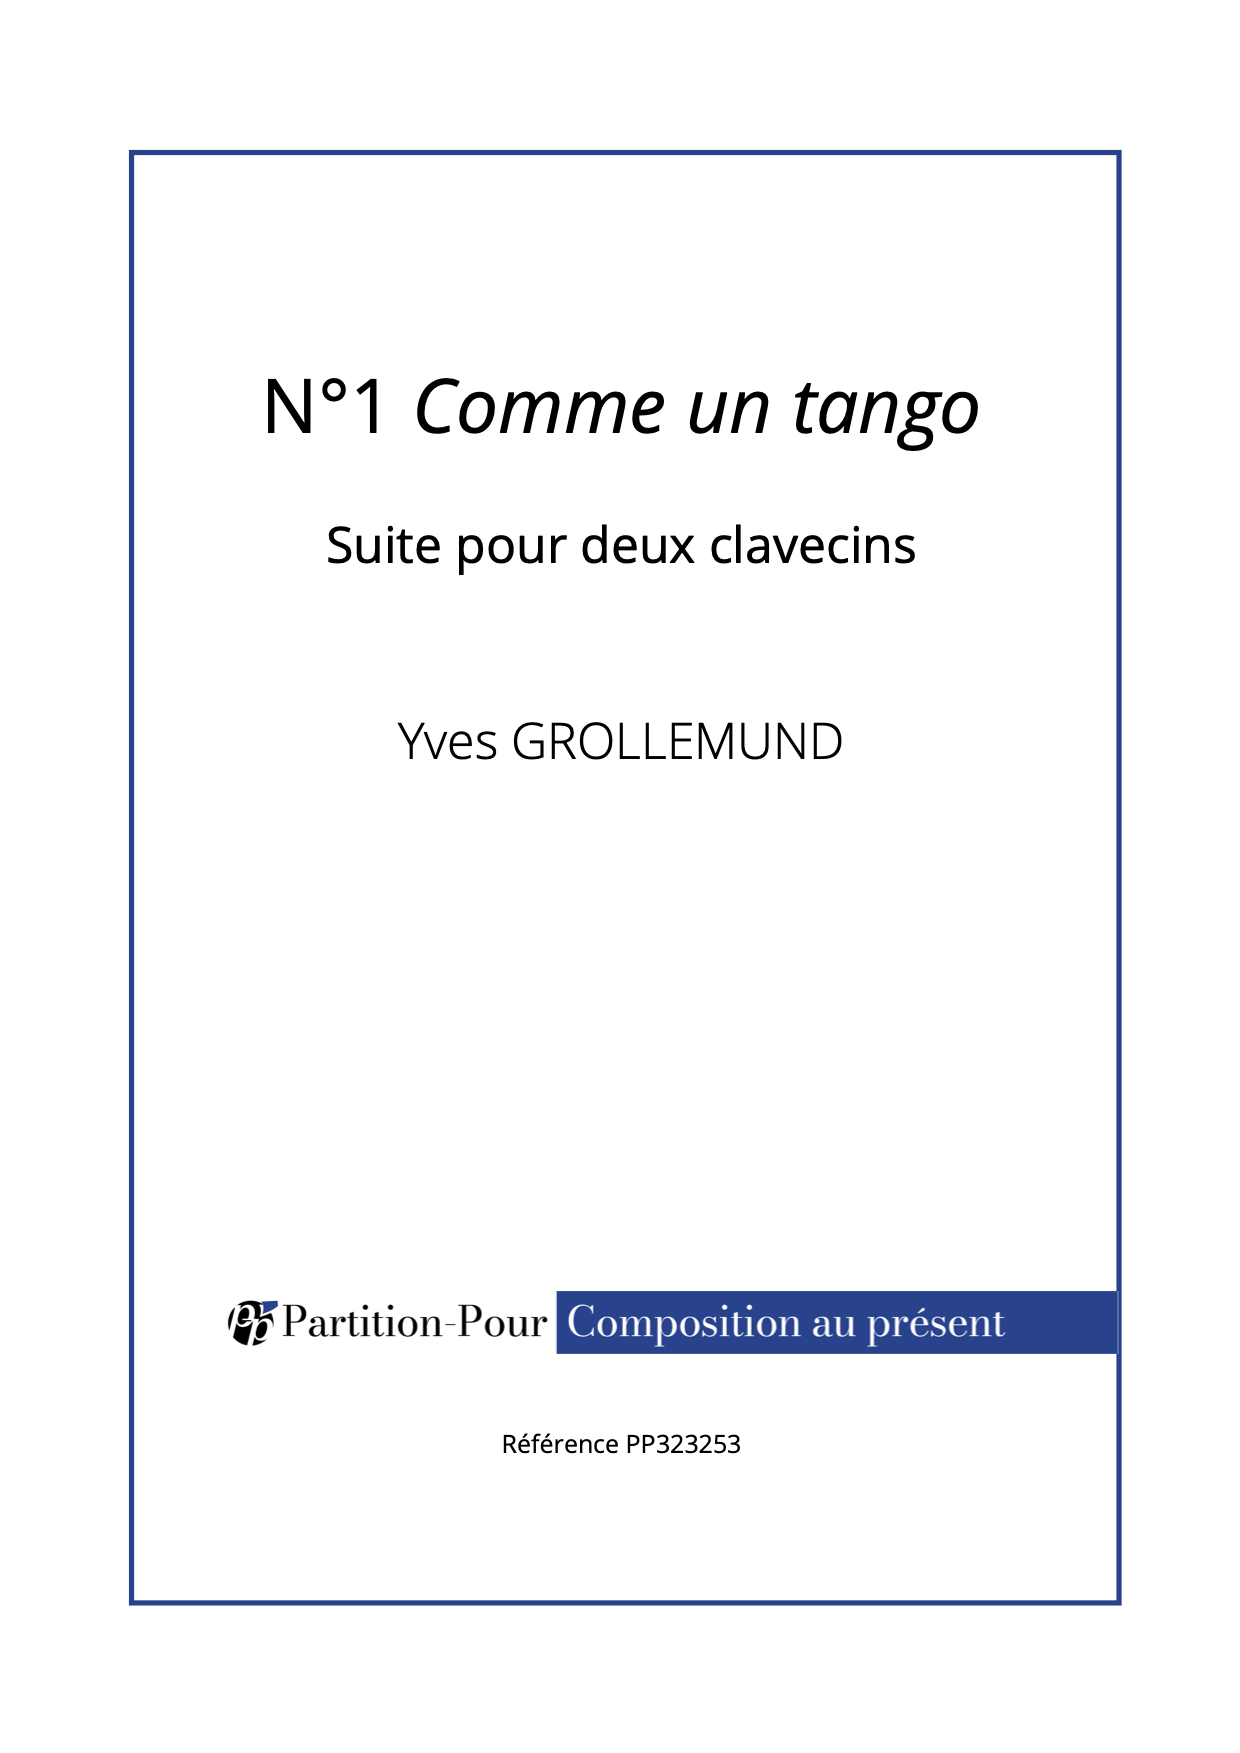 PP323253 - Grollemund Y - Suite pour 2 clavecins - N°1 Comme un tango -présentation